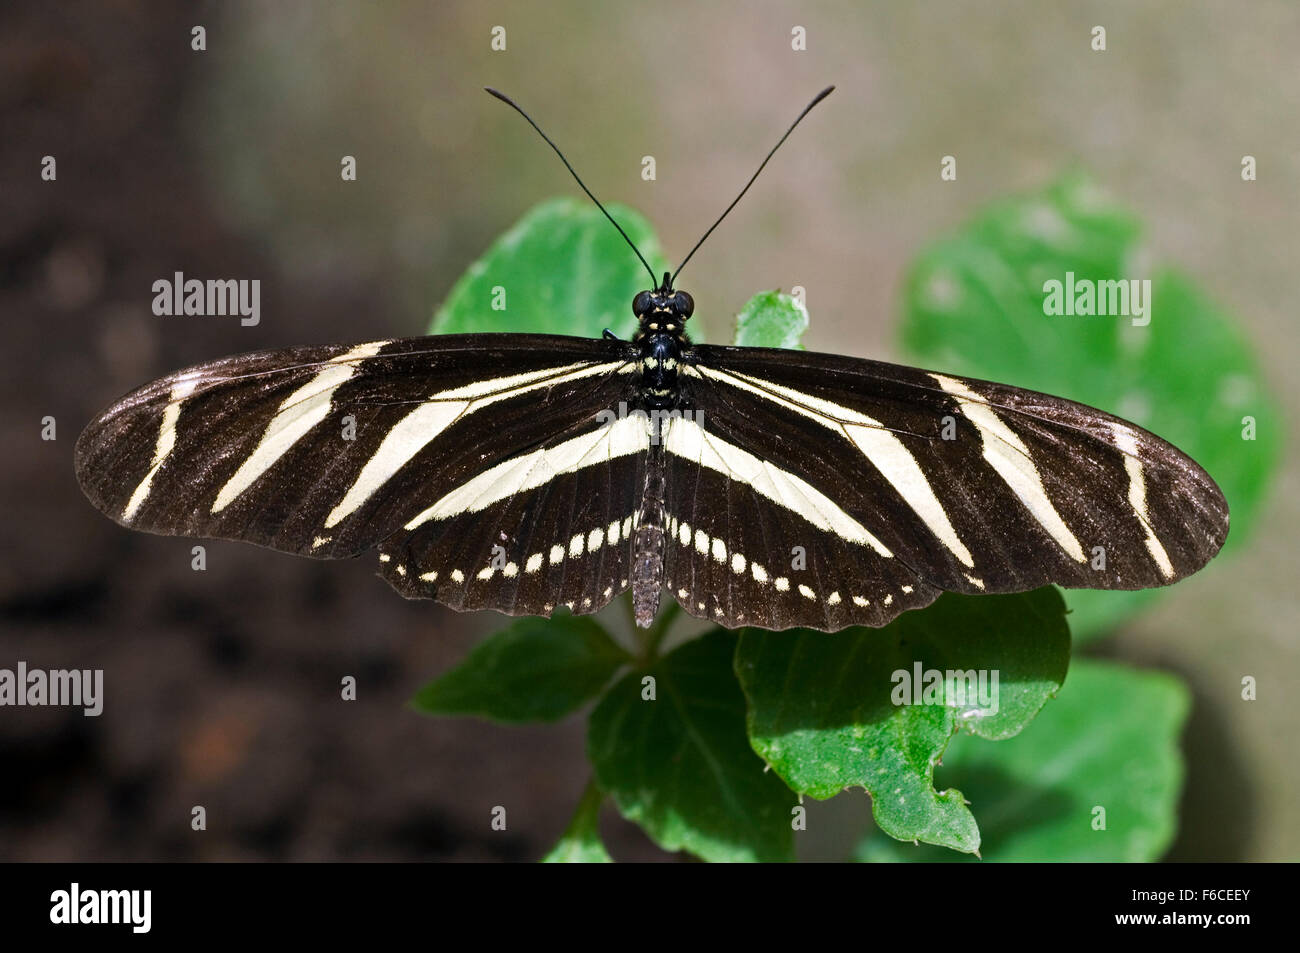 Zebra longwing / zebra heliconian / zebra butterfly (Heliconius charithonia / Heliconius charitonius) on leaf, Costa Rica Stock Photo